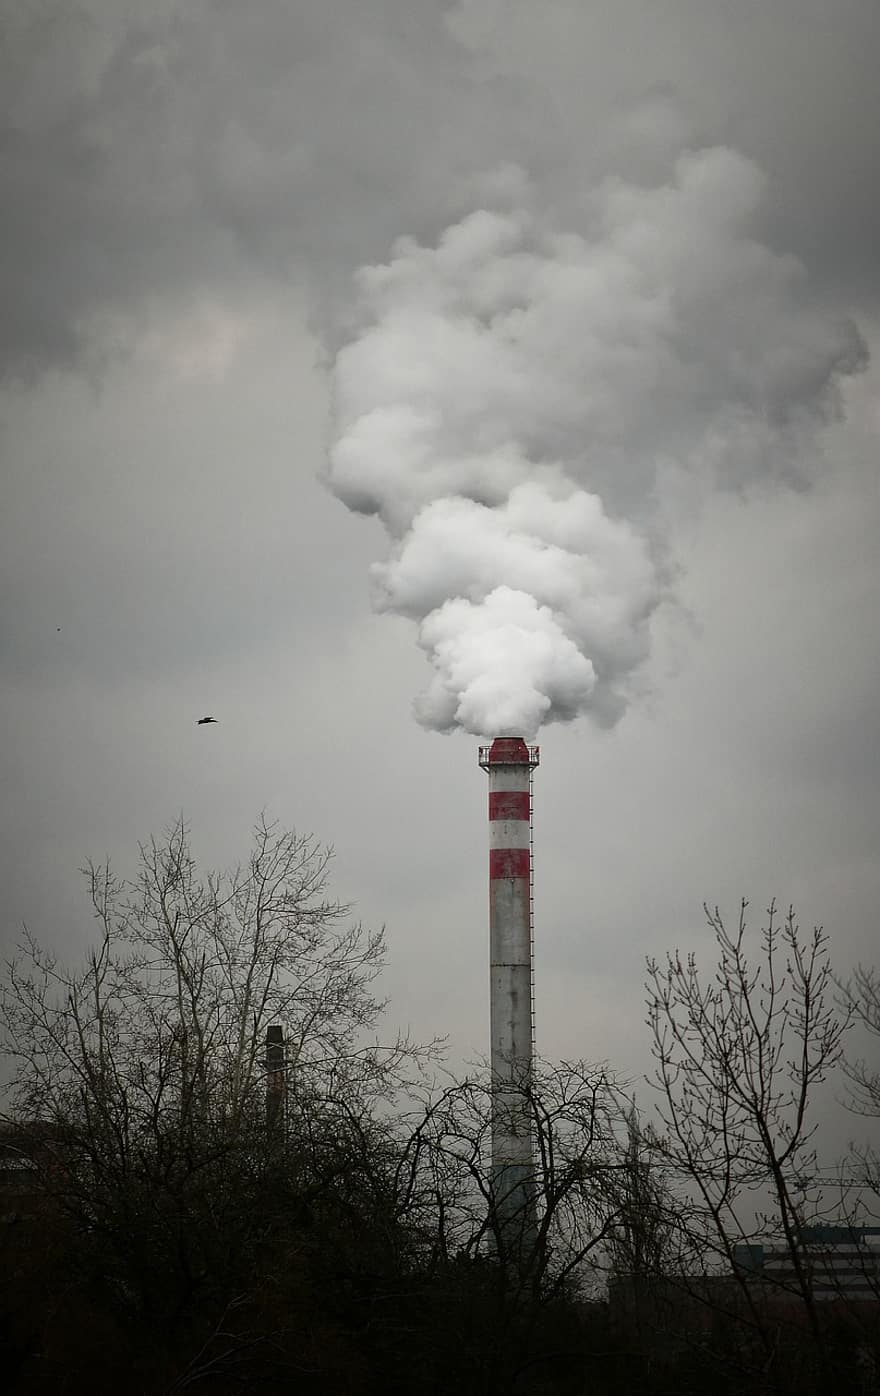 ρύπανση, αέρας, παγκόσμια υπερθέρμανση, καπνός, τοξικός, βιομηχανικός, εργοστάσιο, περιβάλλον